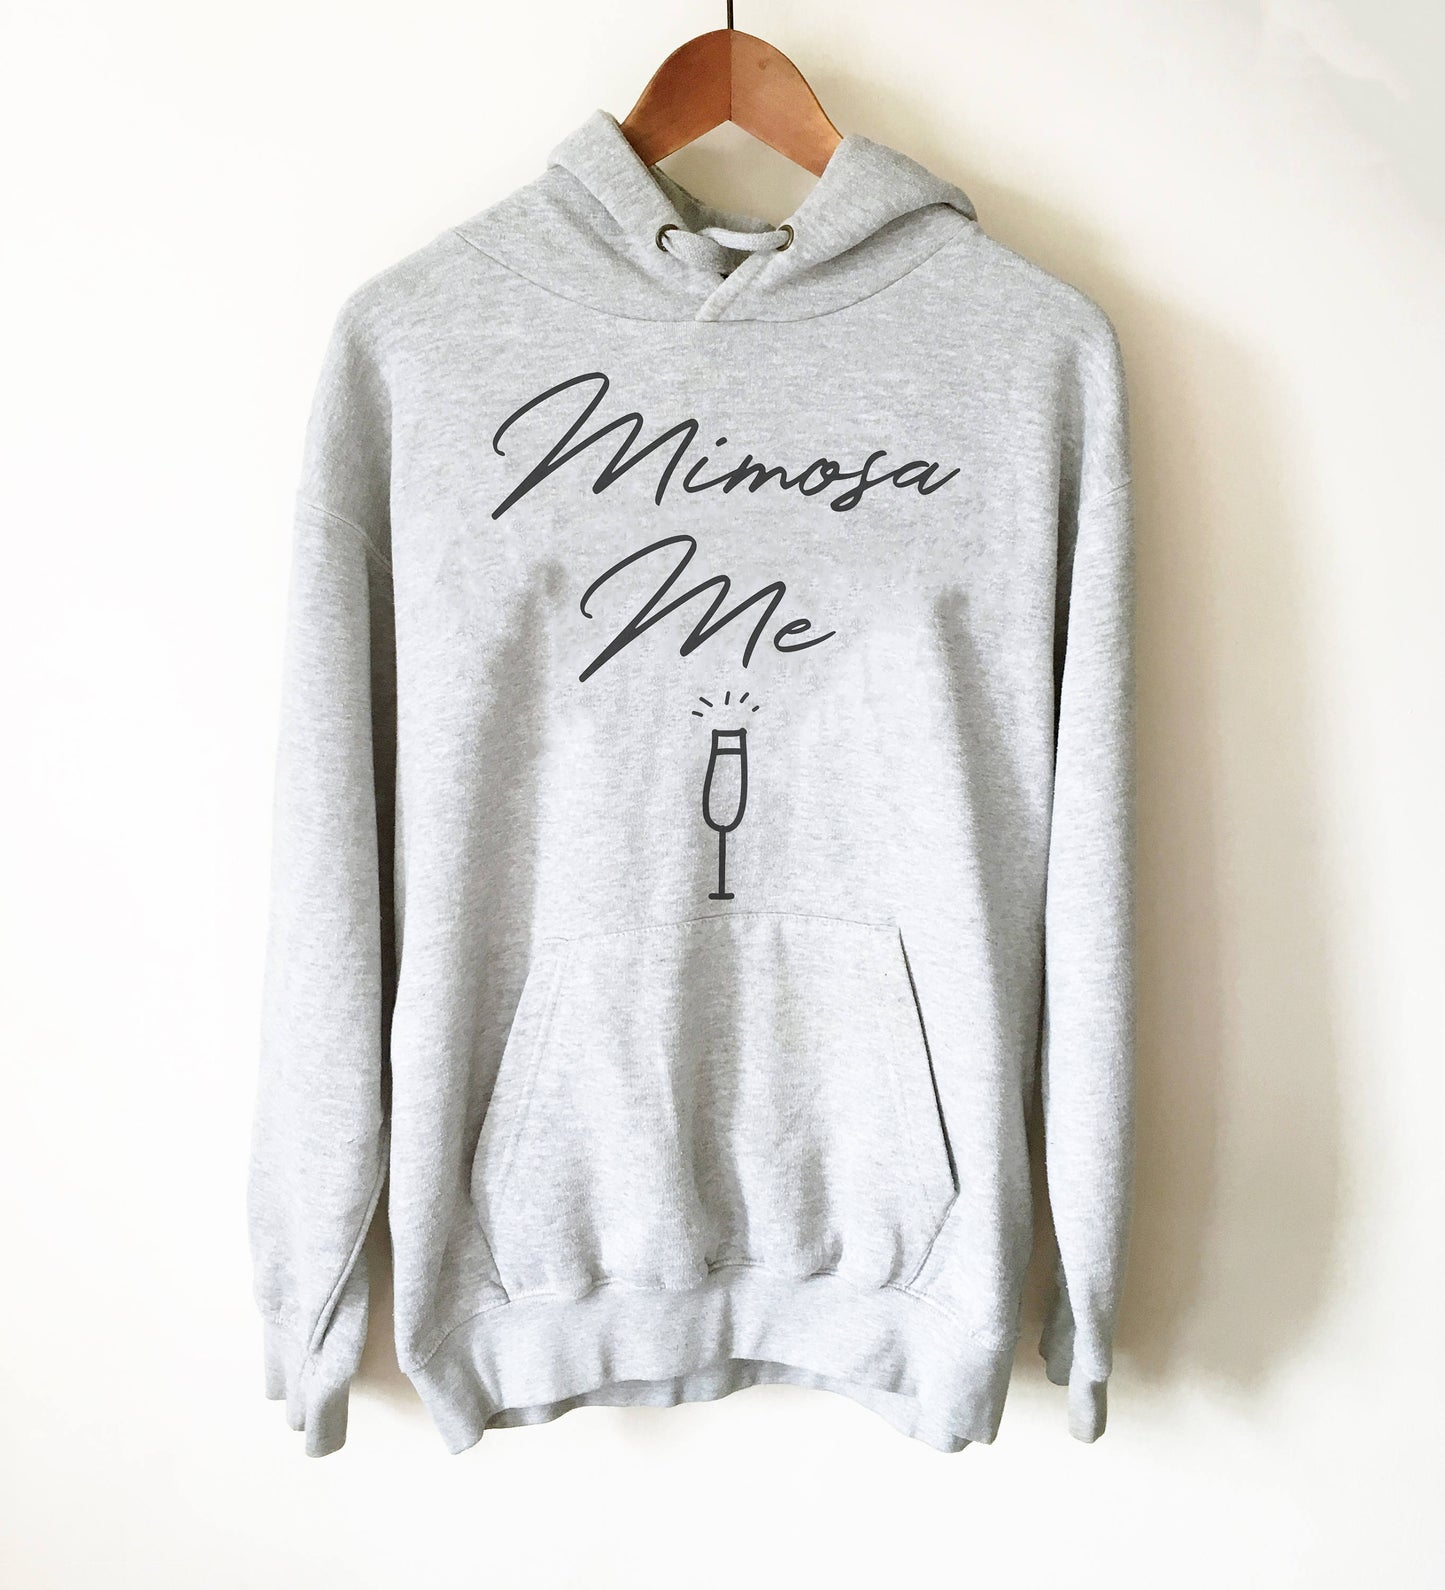 Mimosa Me Hoodie - Mimosa shirt | Mimosa shirts | Brunch shirt | Sunday brunch shirt | Brunch and bubbly |